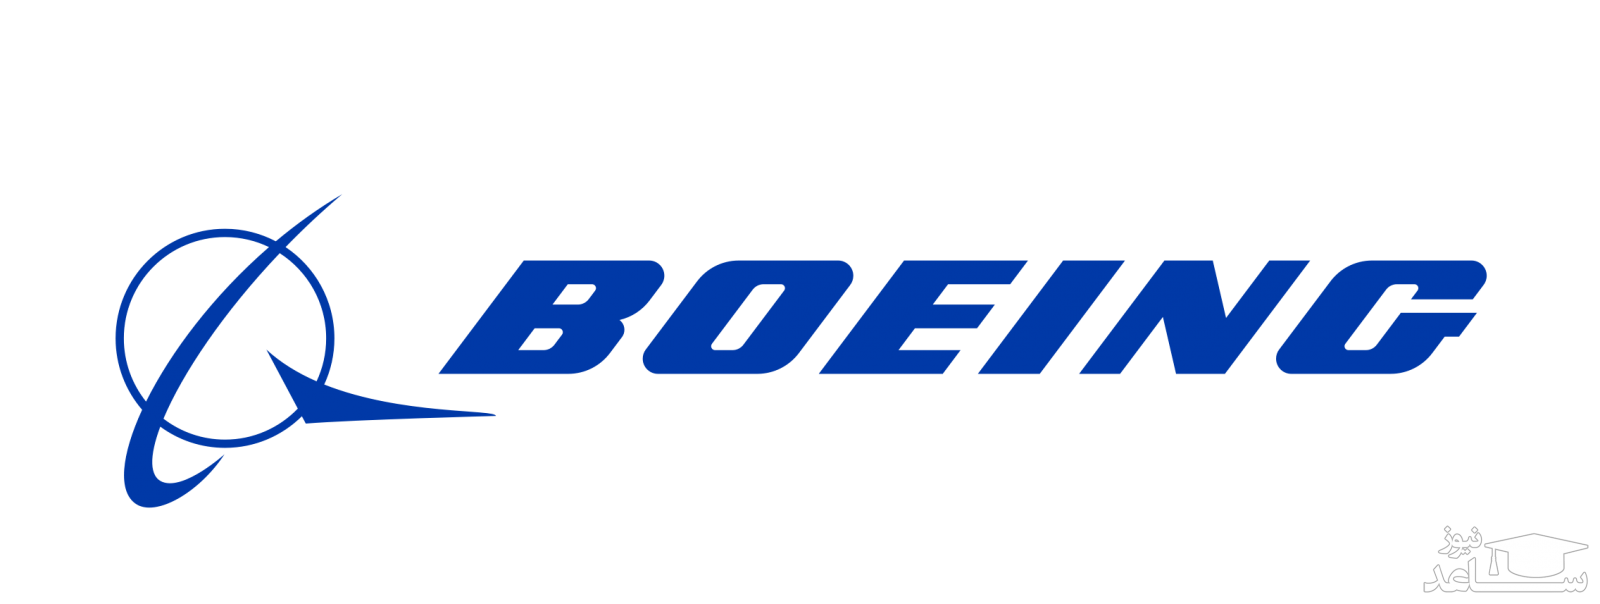 بوئینگ، بزرگترین شرکت هواپیمایی جهان